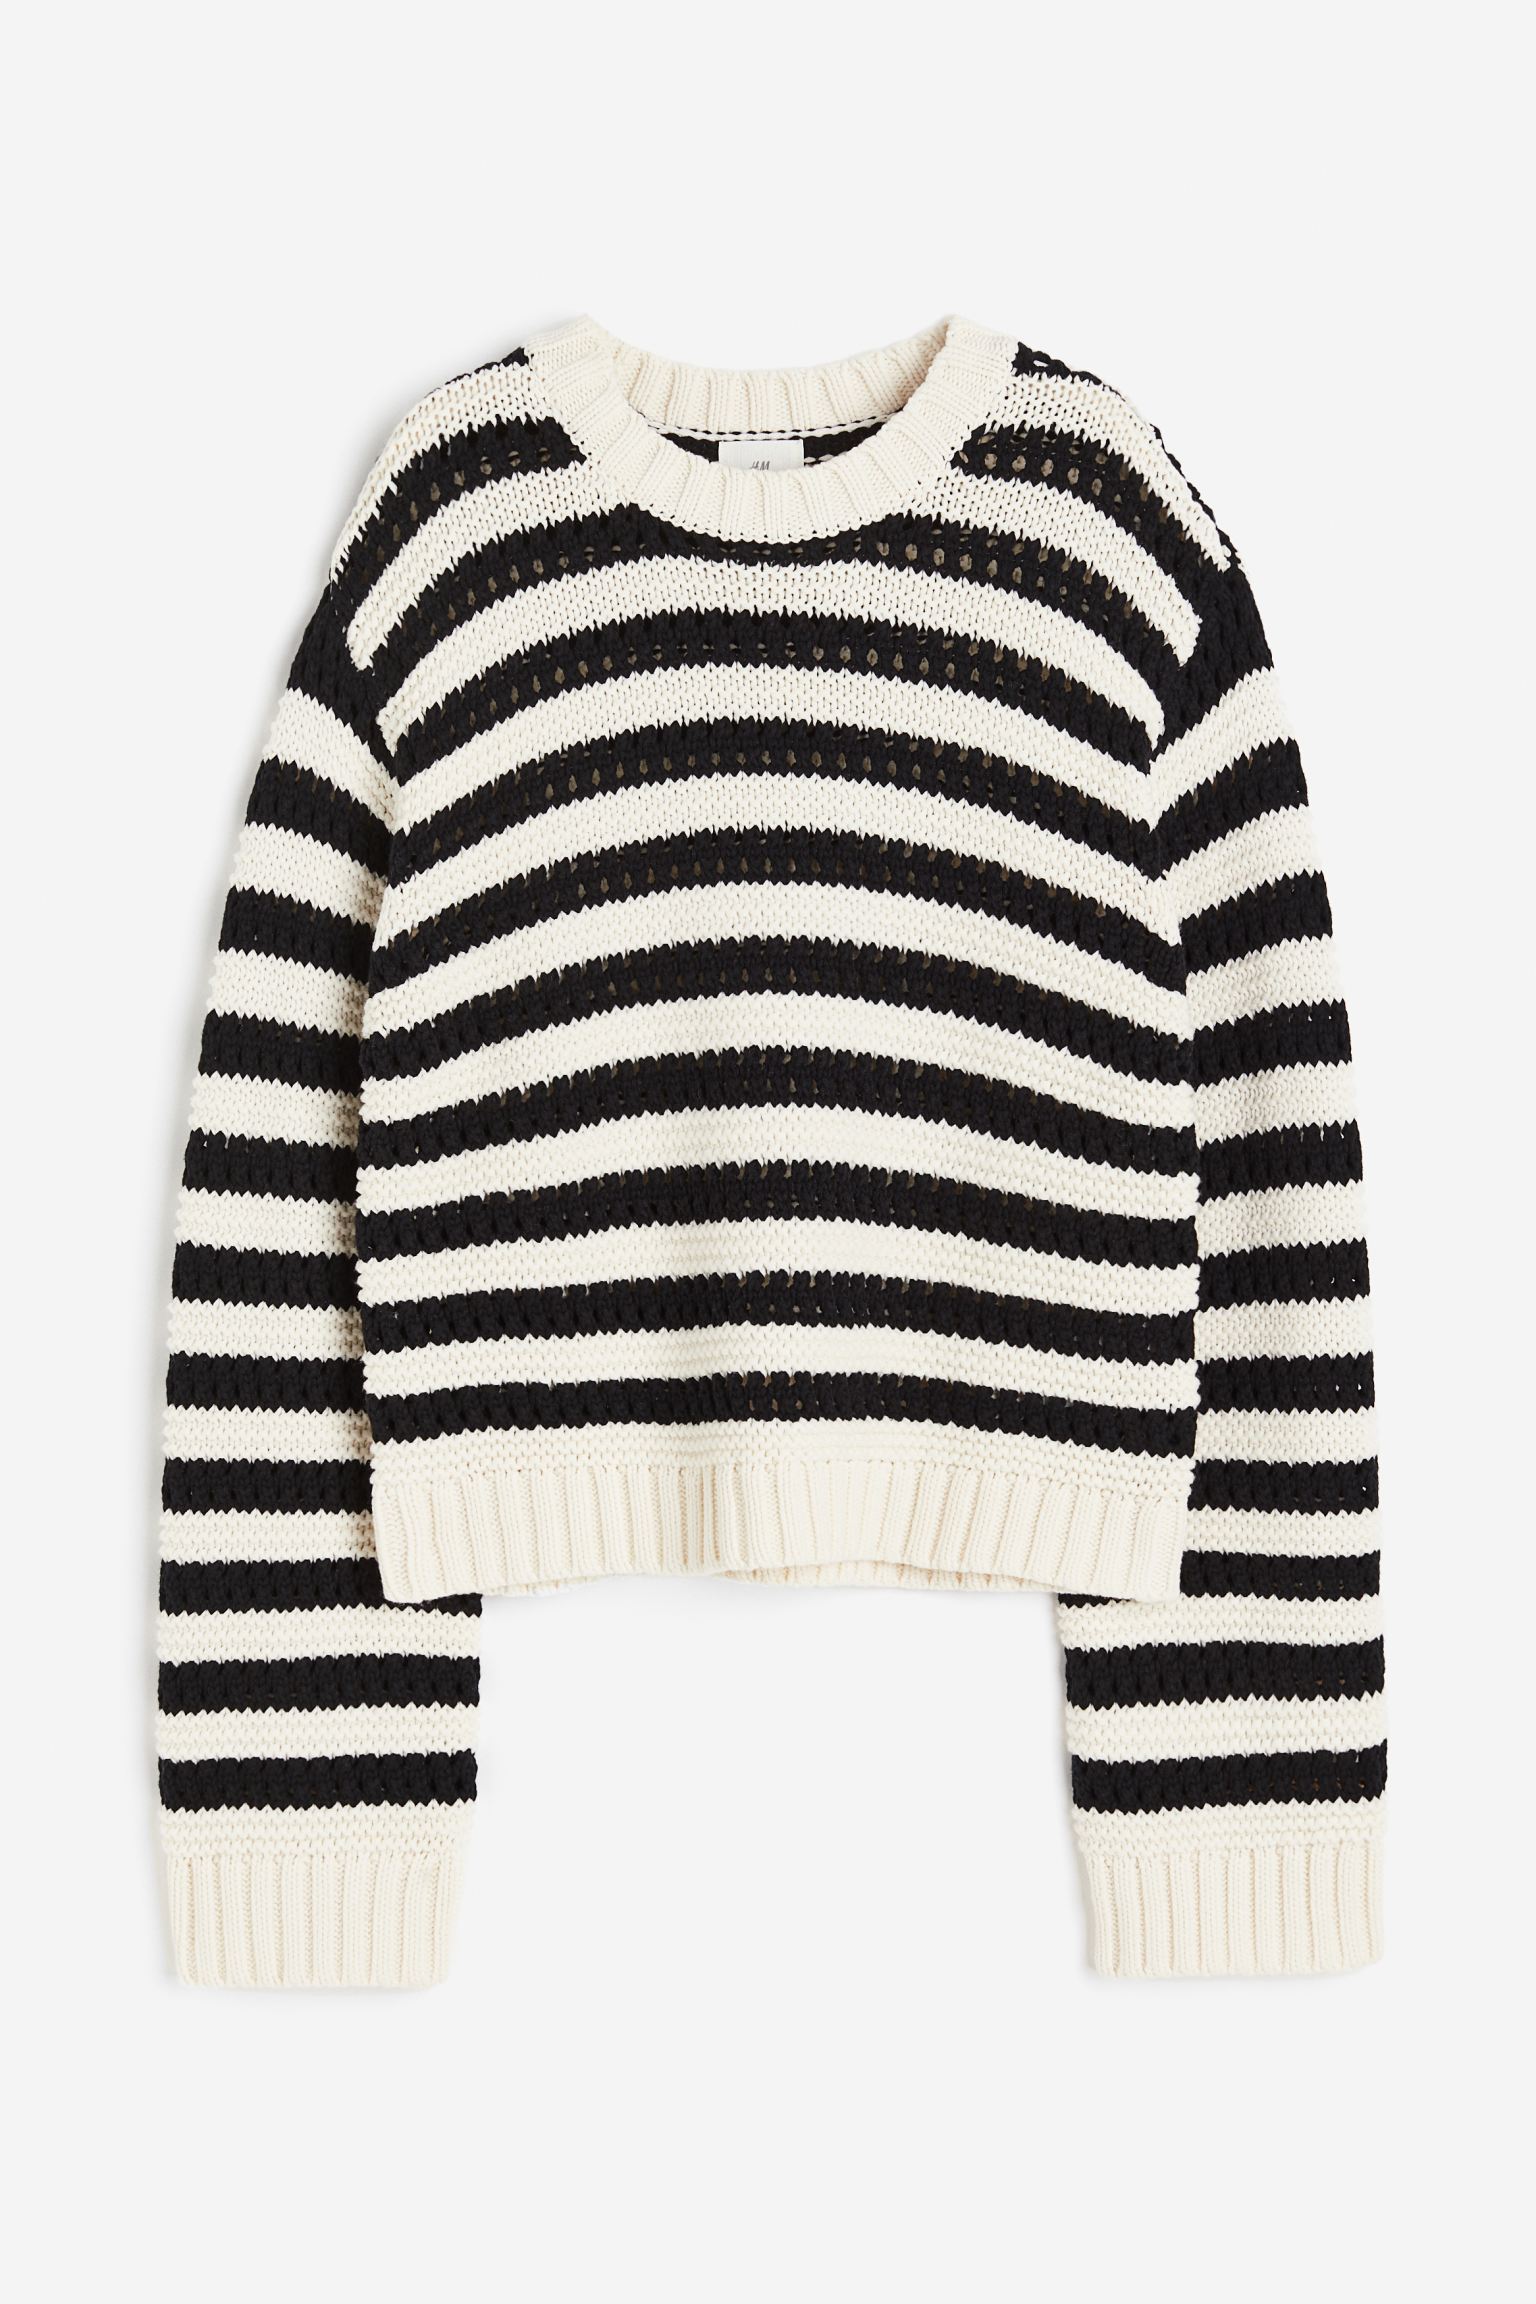 Свитер H&M Hole, кремовый/черный пуловер из ажурного трикотажа с круглым вырезом l бежевый